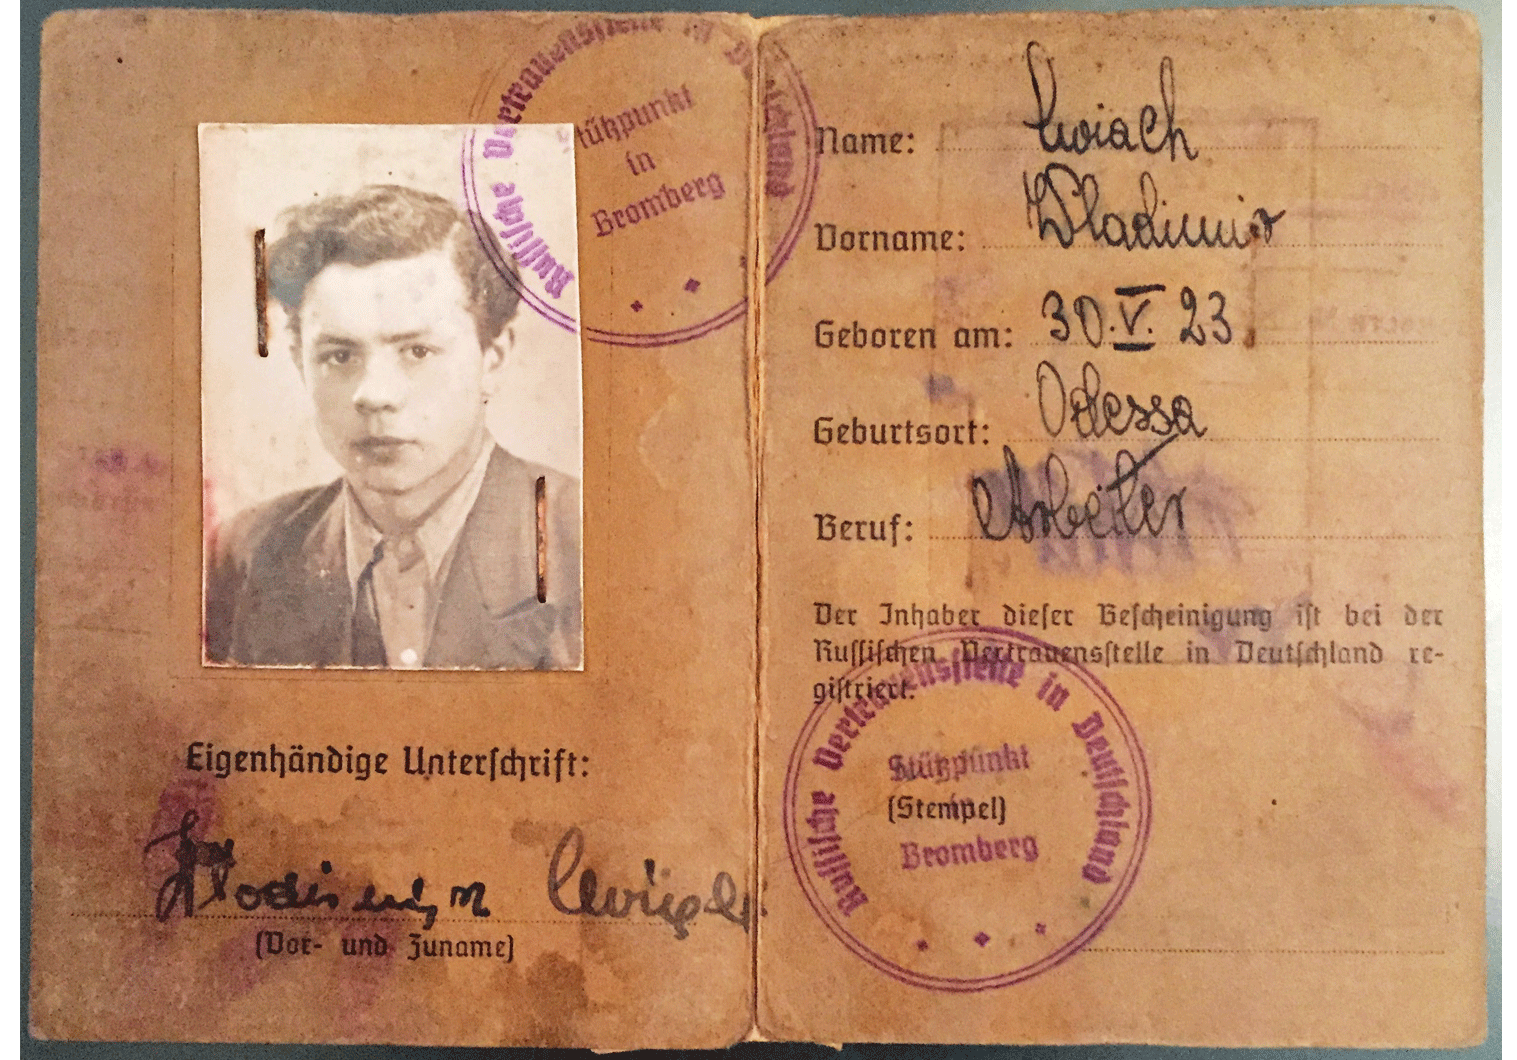 WW2 identity document